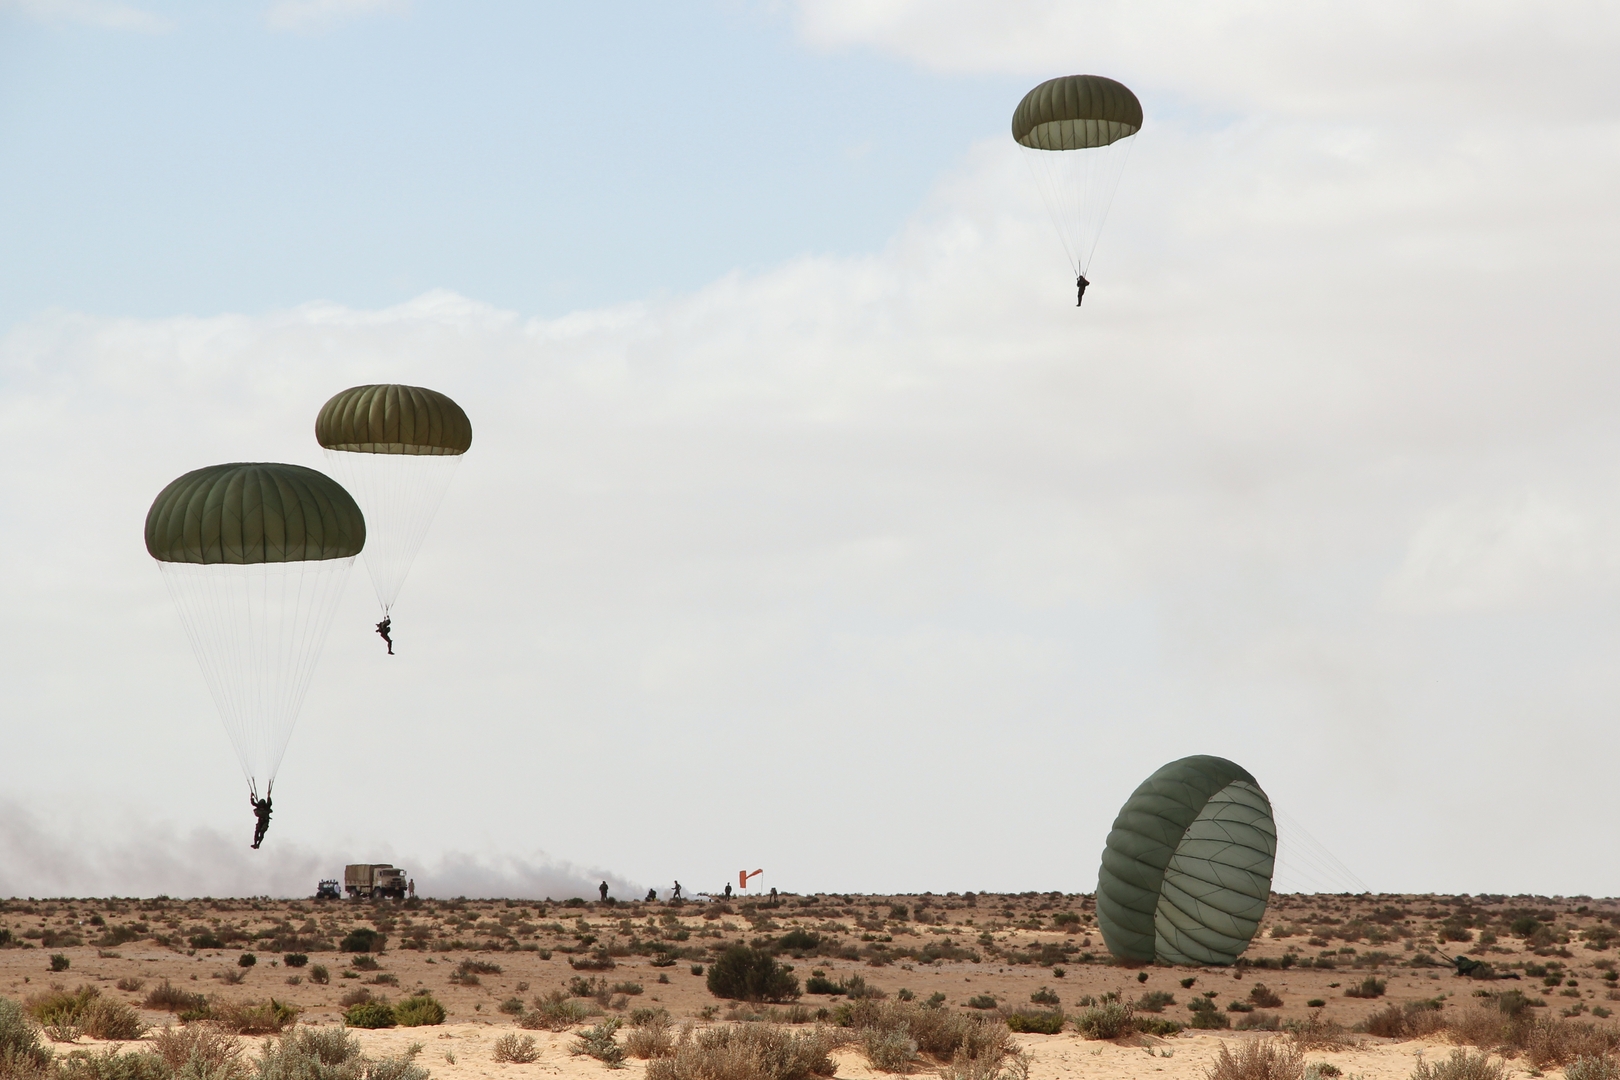 الجيش المصري ينفذ مشروعا تكتيكيا عسكريا باستخدام مقلدات الرماية